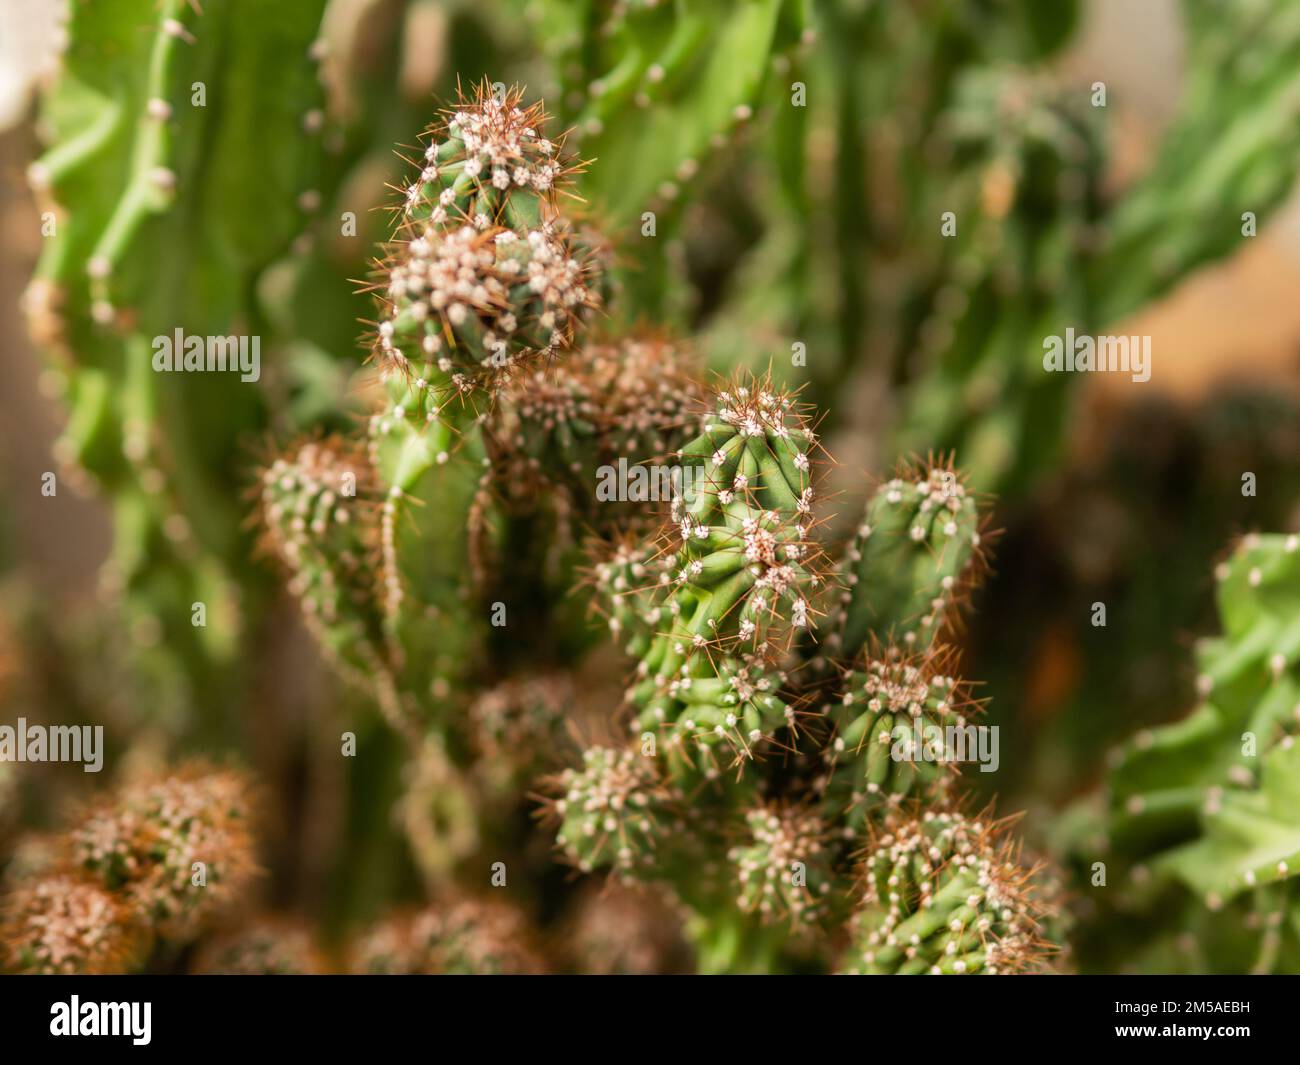 Cereus repandus, Cereus peruvianus or Peruvian apple cactus . Natural background with prickly plant. Stock Photo